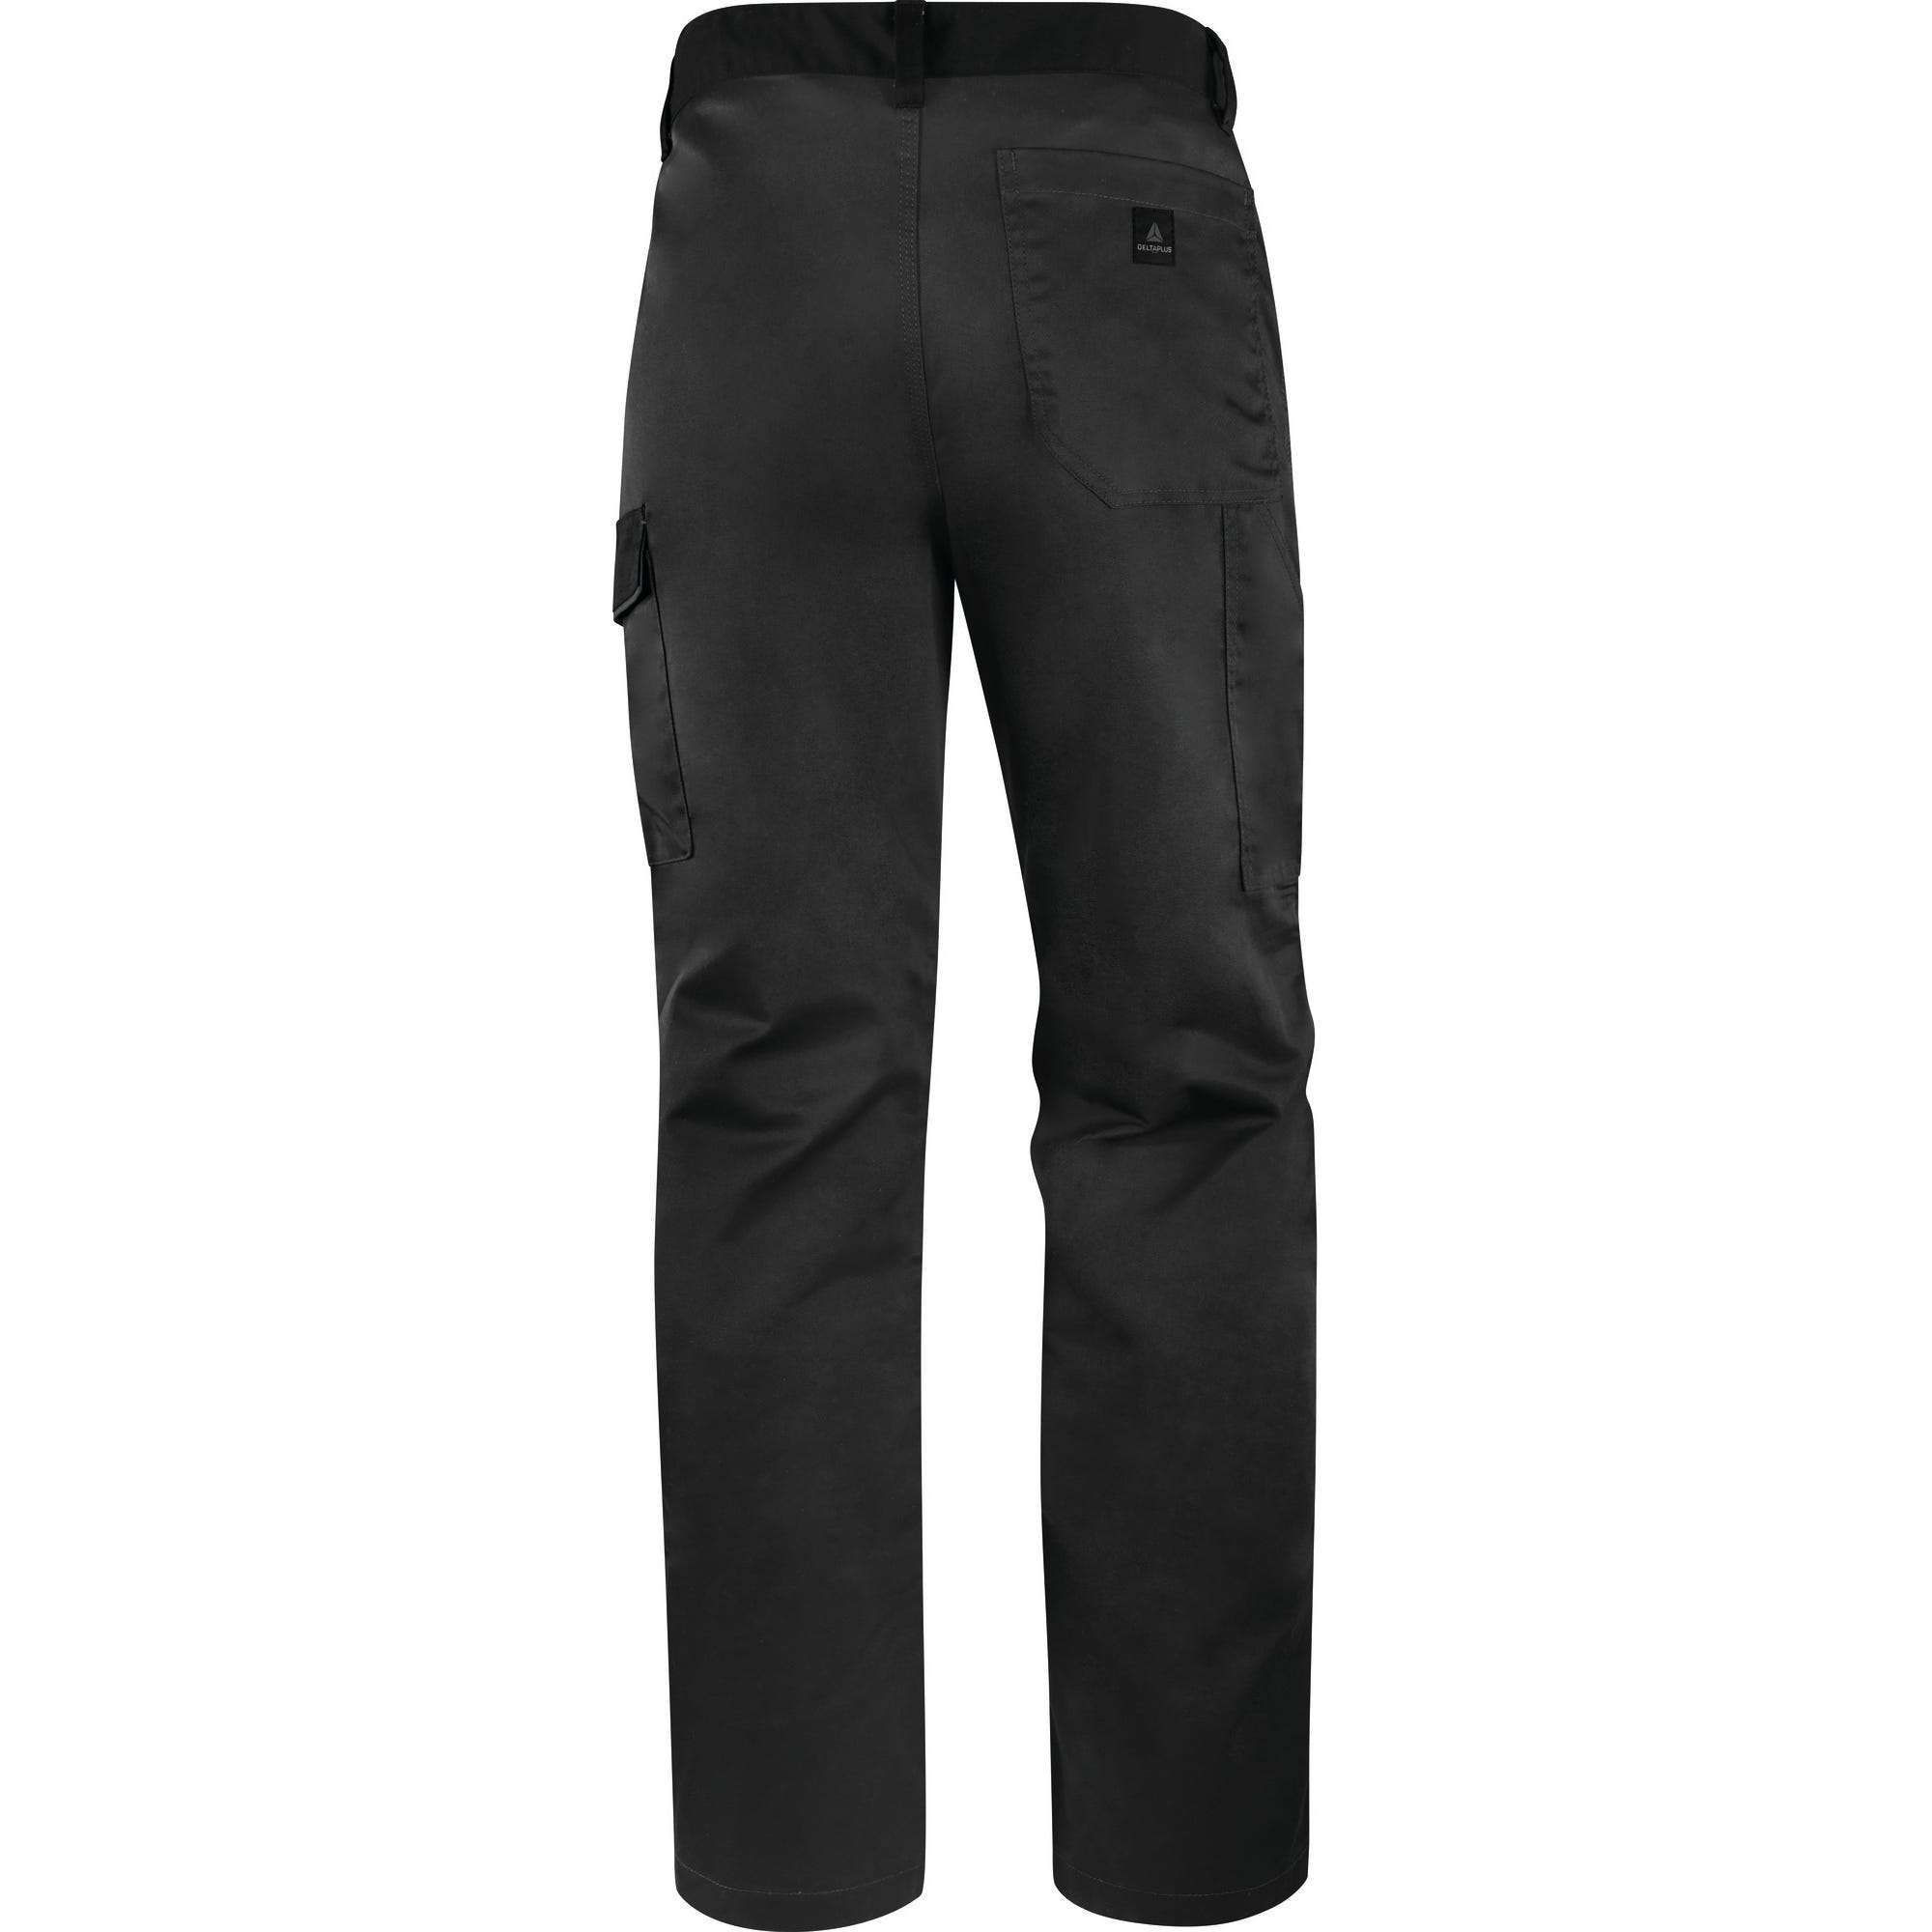 Pantalon de travail gris foncé T.M M1PA2 - DELTA PLUS 1